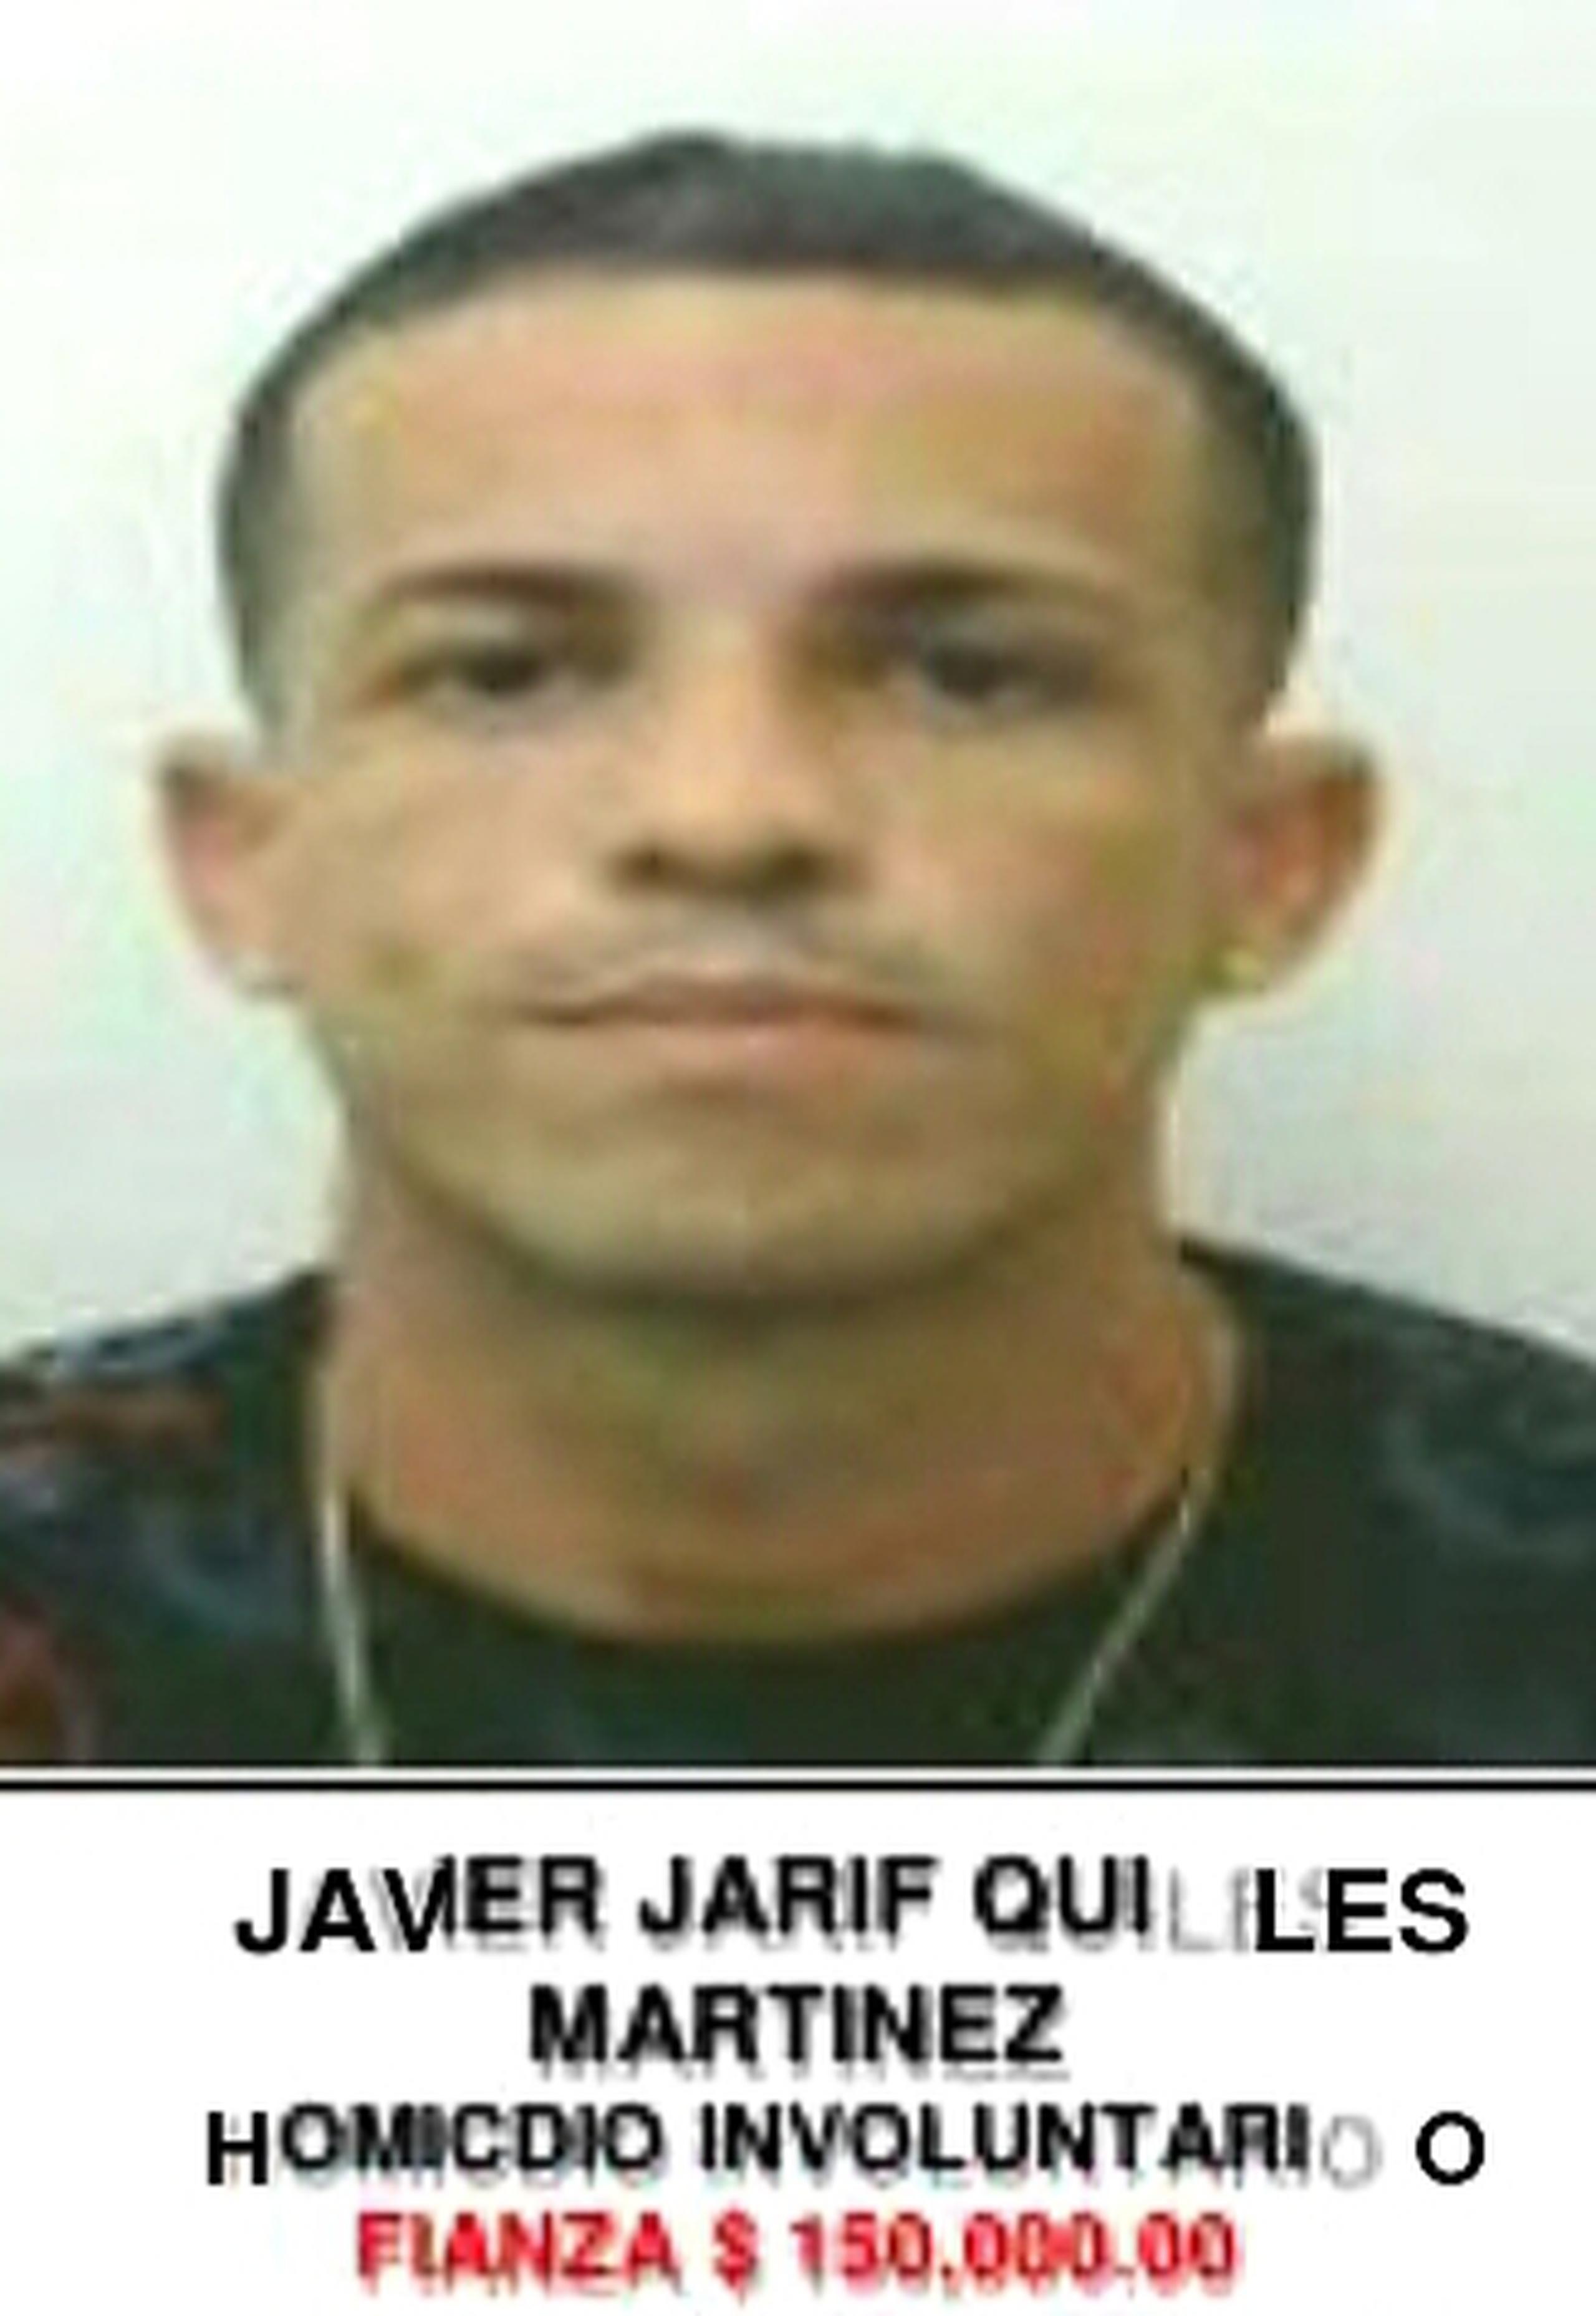 Contra Javier Jarif Quiles Martínez, de 34 años, residente de Isabela, pesaba una orden de arresto por el delito de homicidio involuntario, con una fianza de $150,000. (Suministrada)